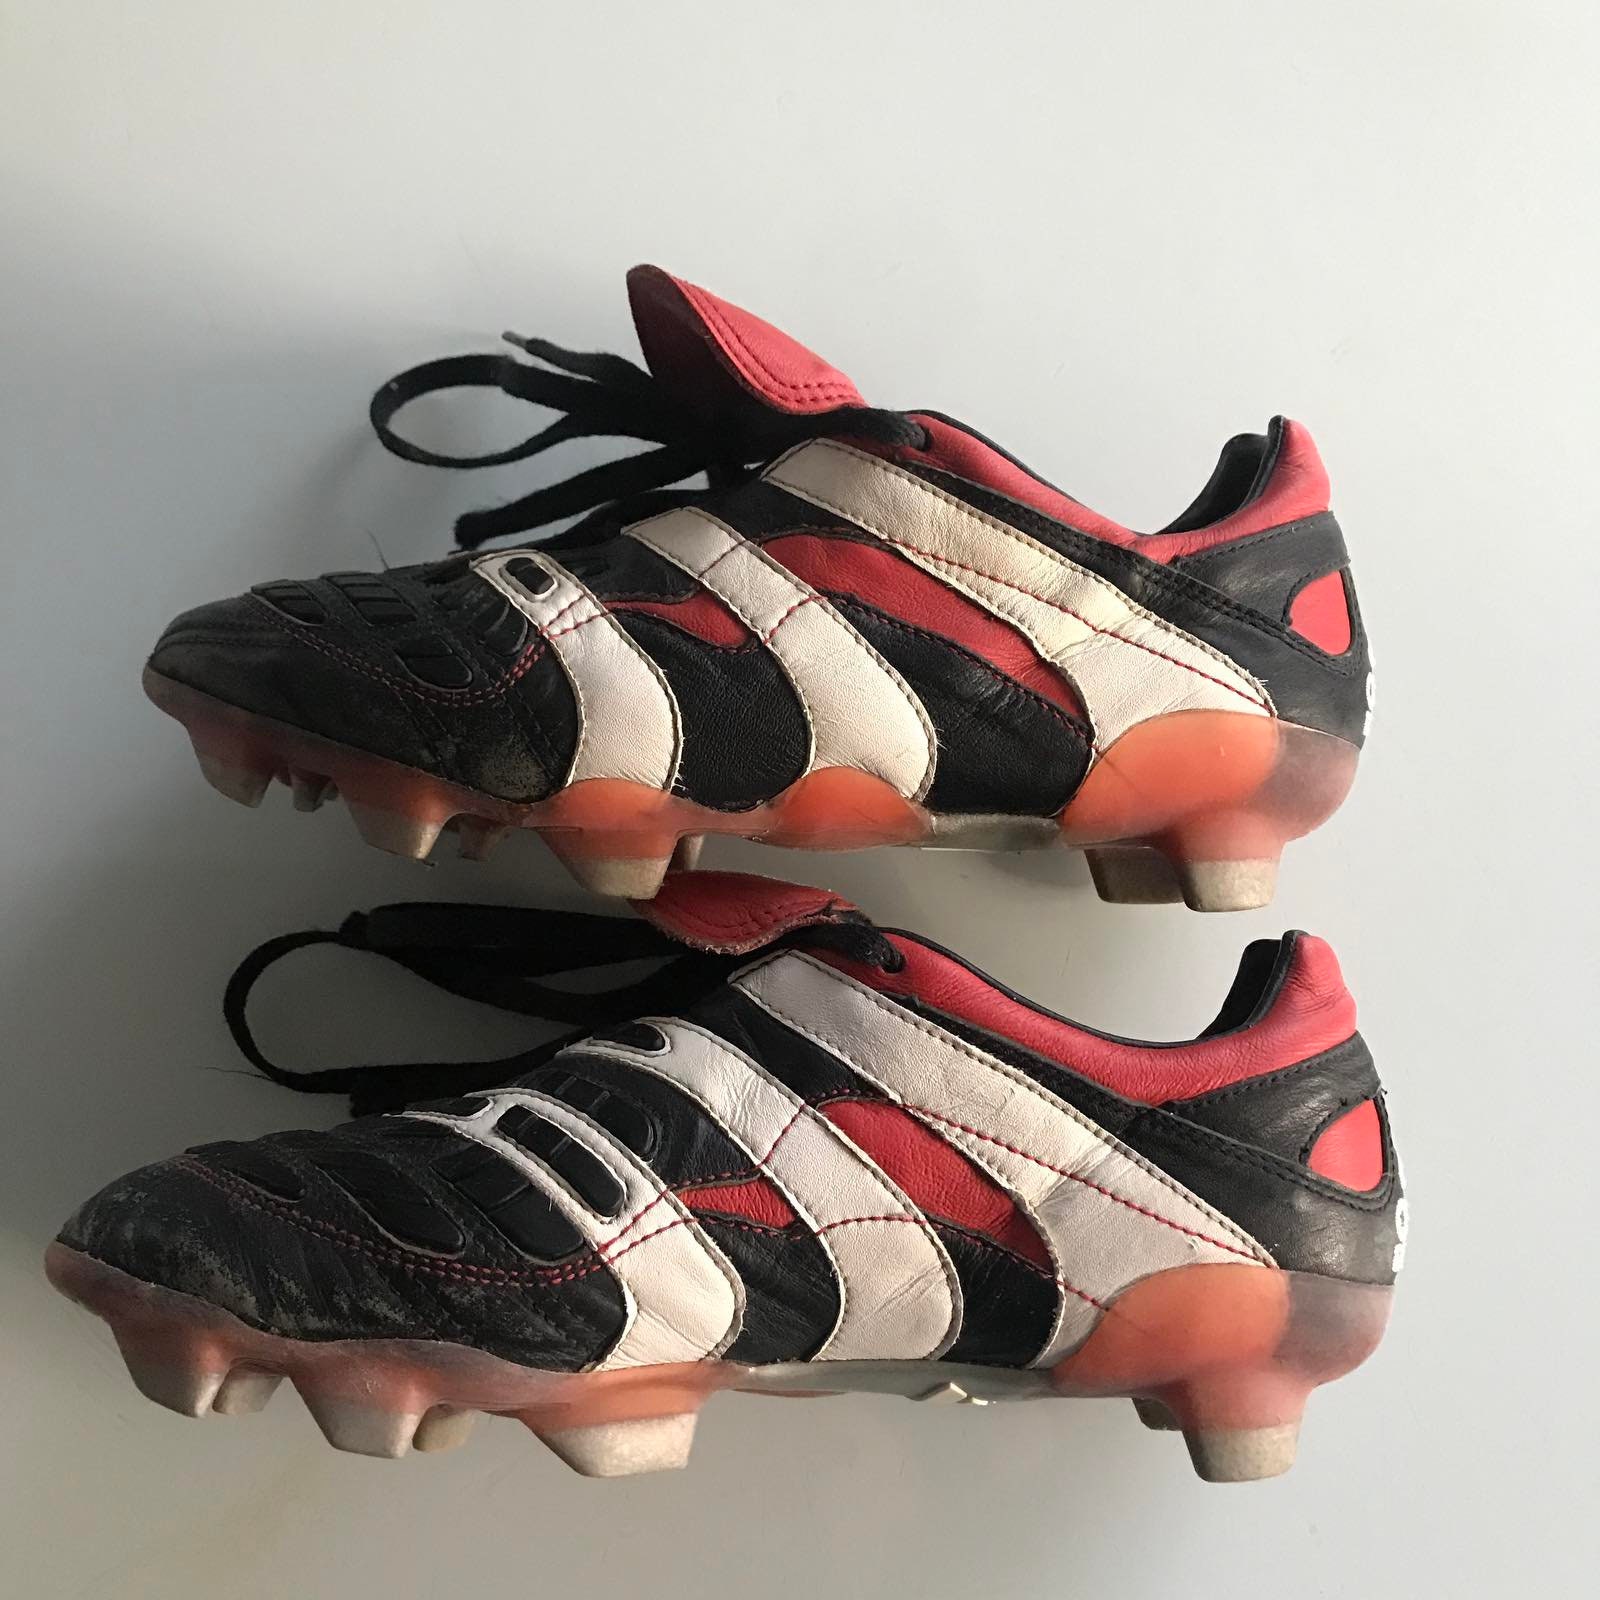 Raras botas Adidas Accelerator Vintage Football 98s - Etsy México